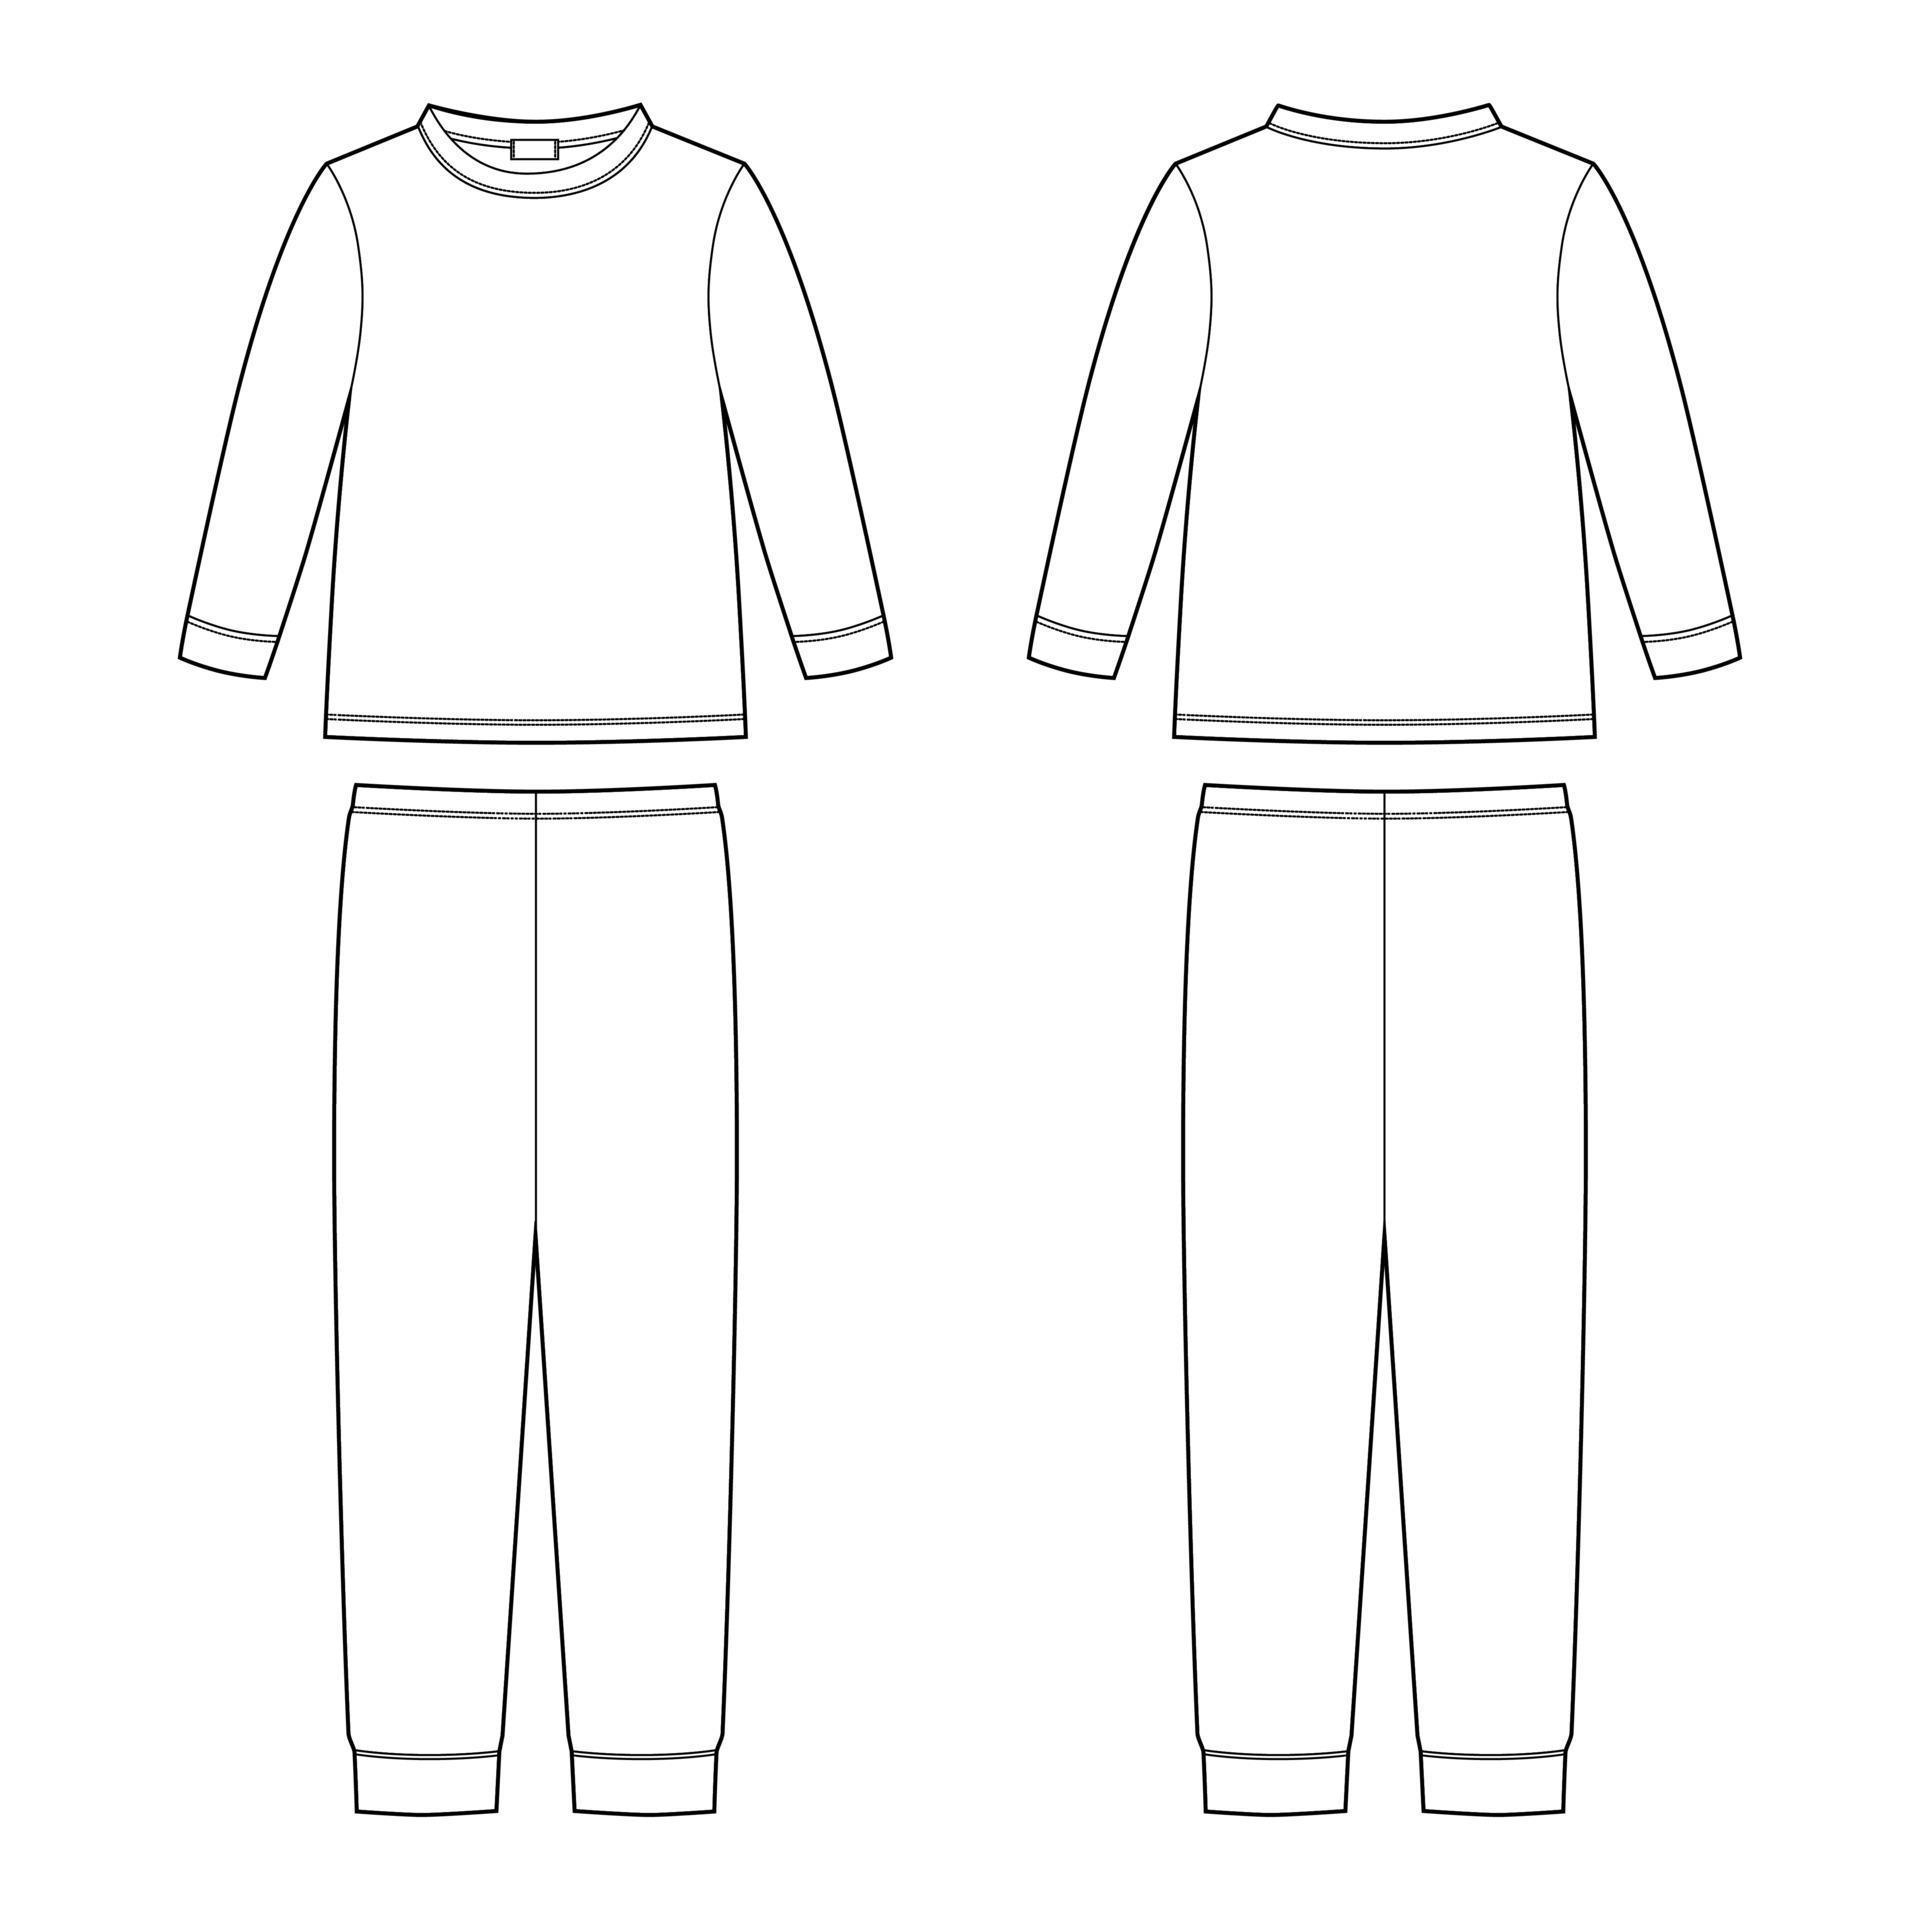 Технический эскиз пижамы